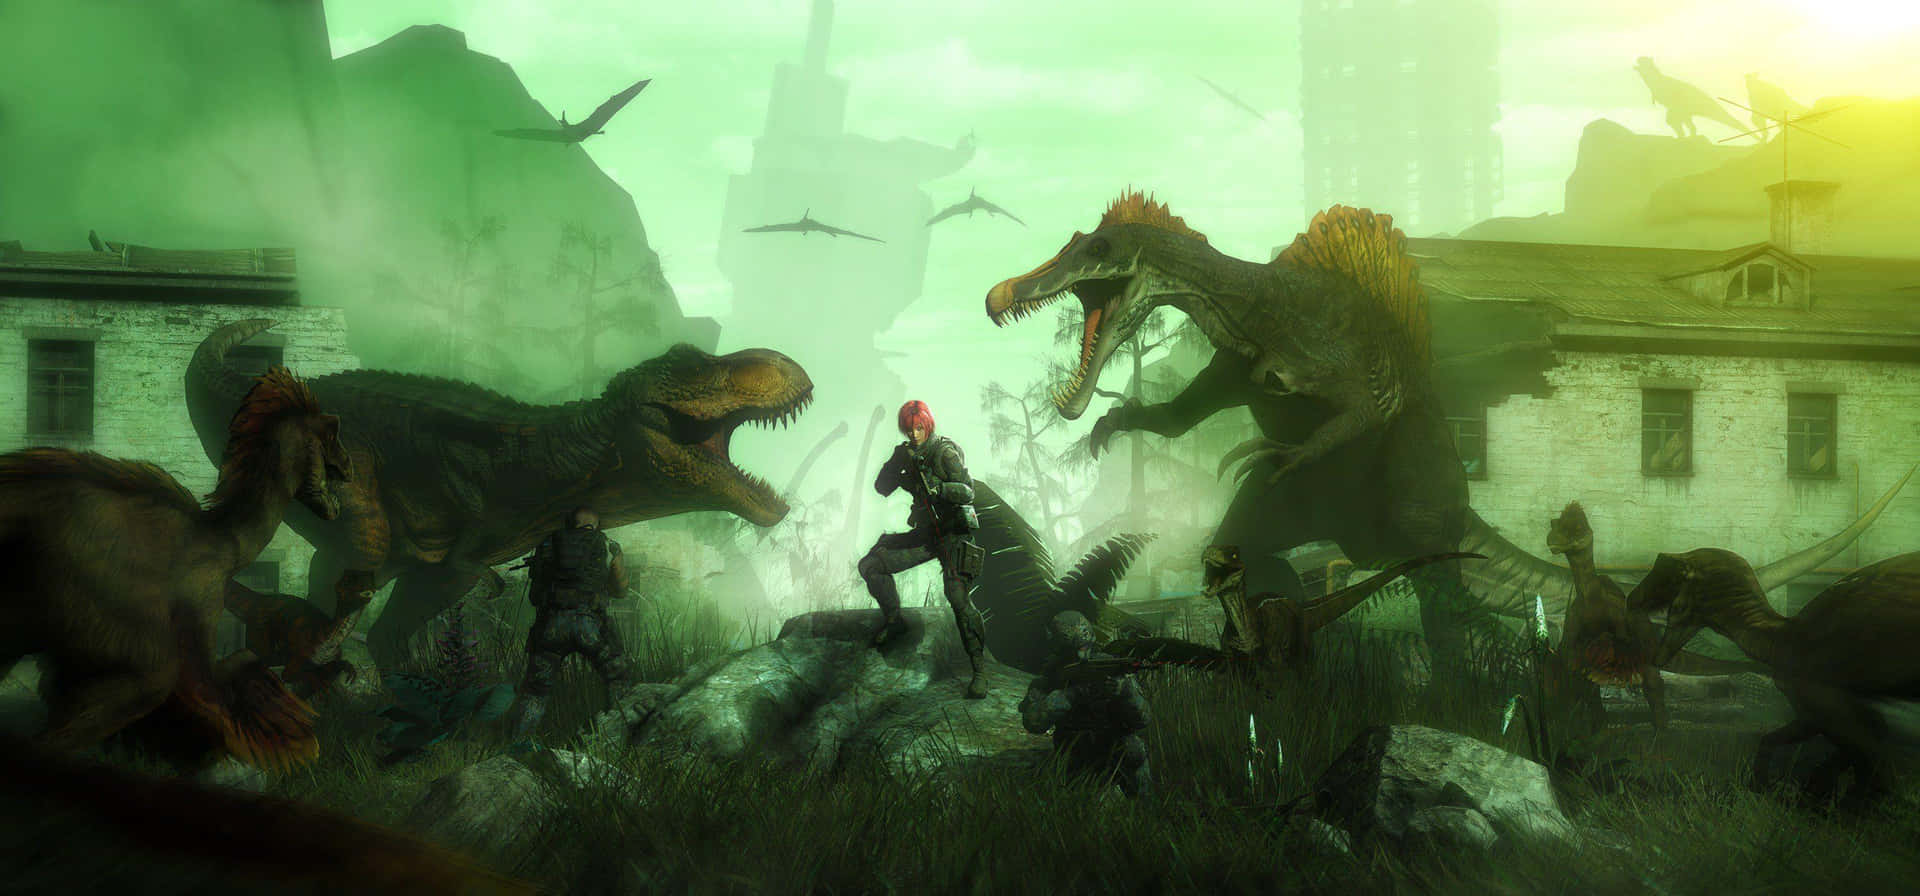 Epic Dinosaur Battle Scene Wallpaper